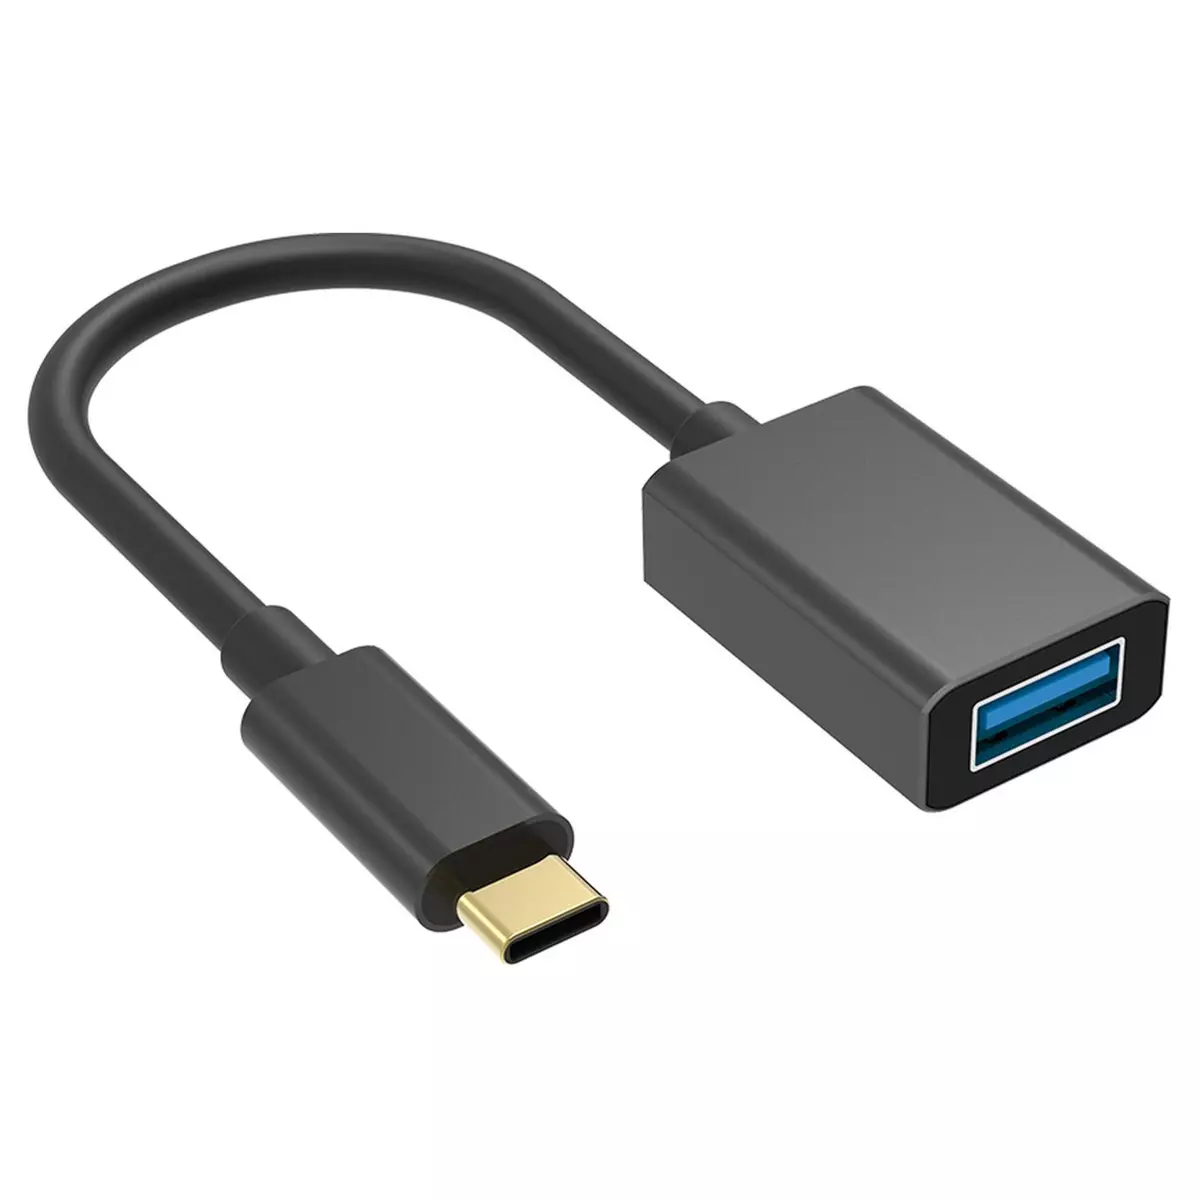 BIGBEN Adaptateur USB C vers USB A - Noir pas cher 